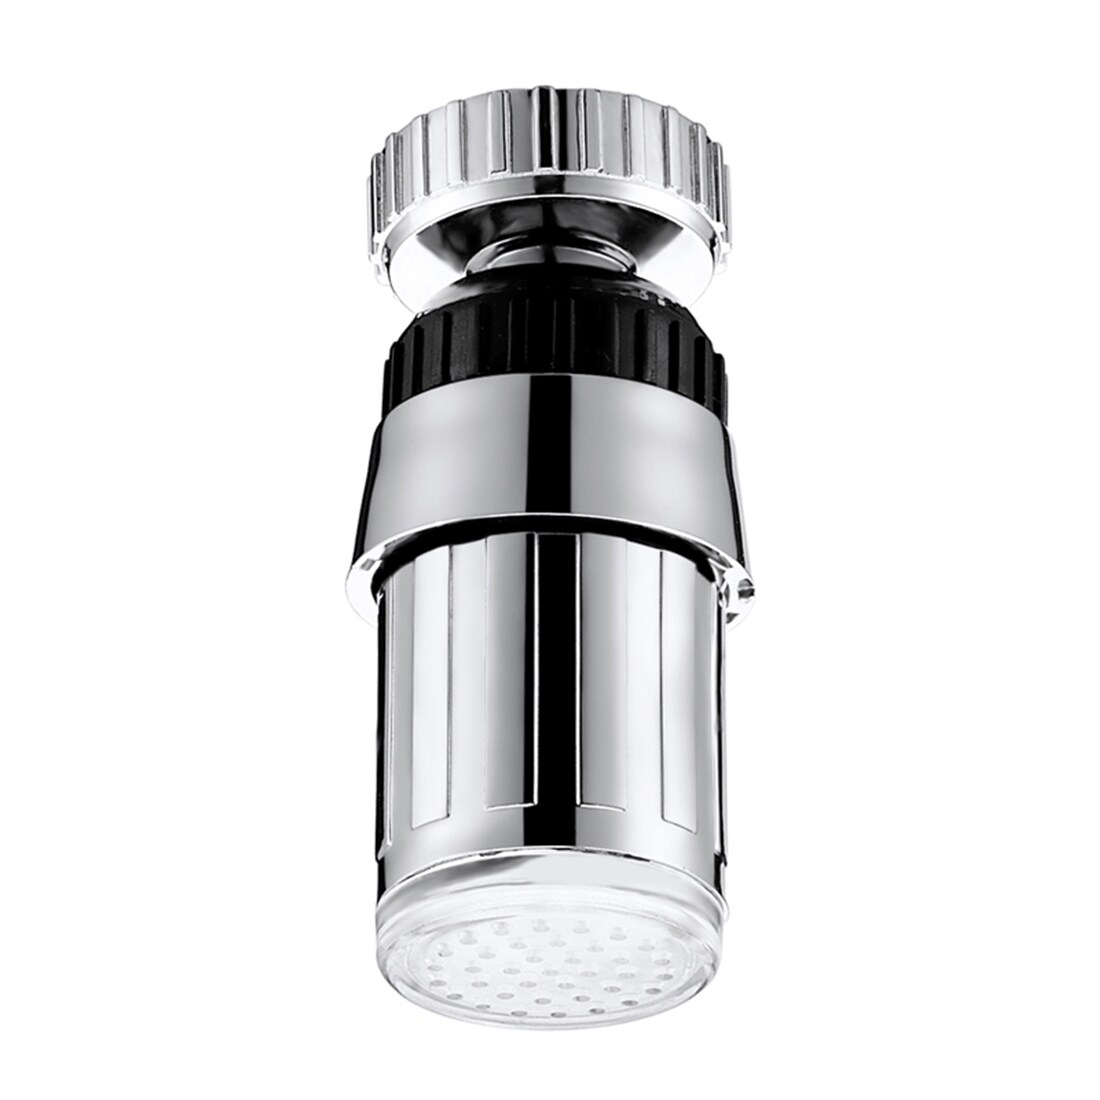 LED-belysning til Køkkenvandhane - Oplys Vandet